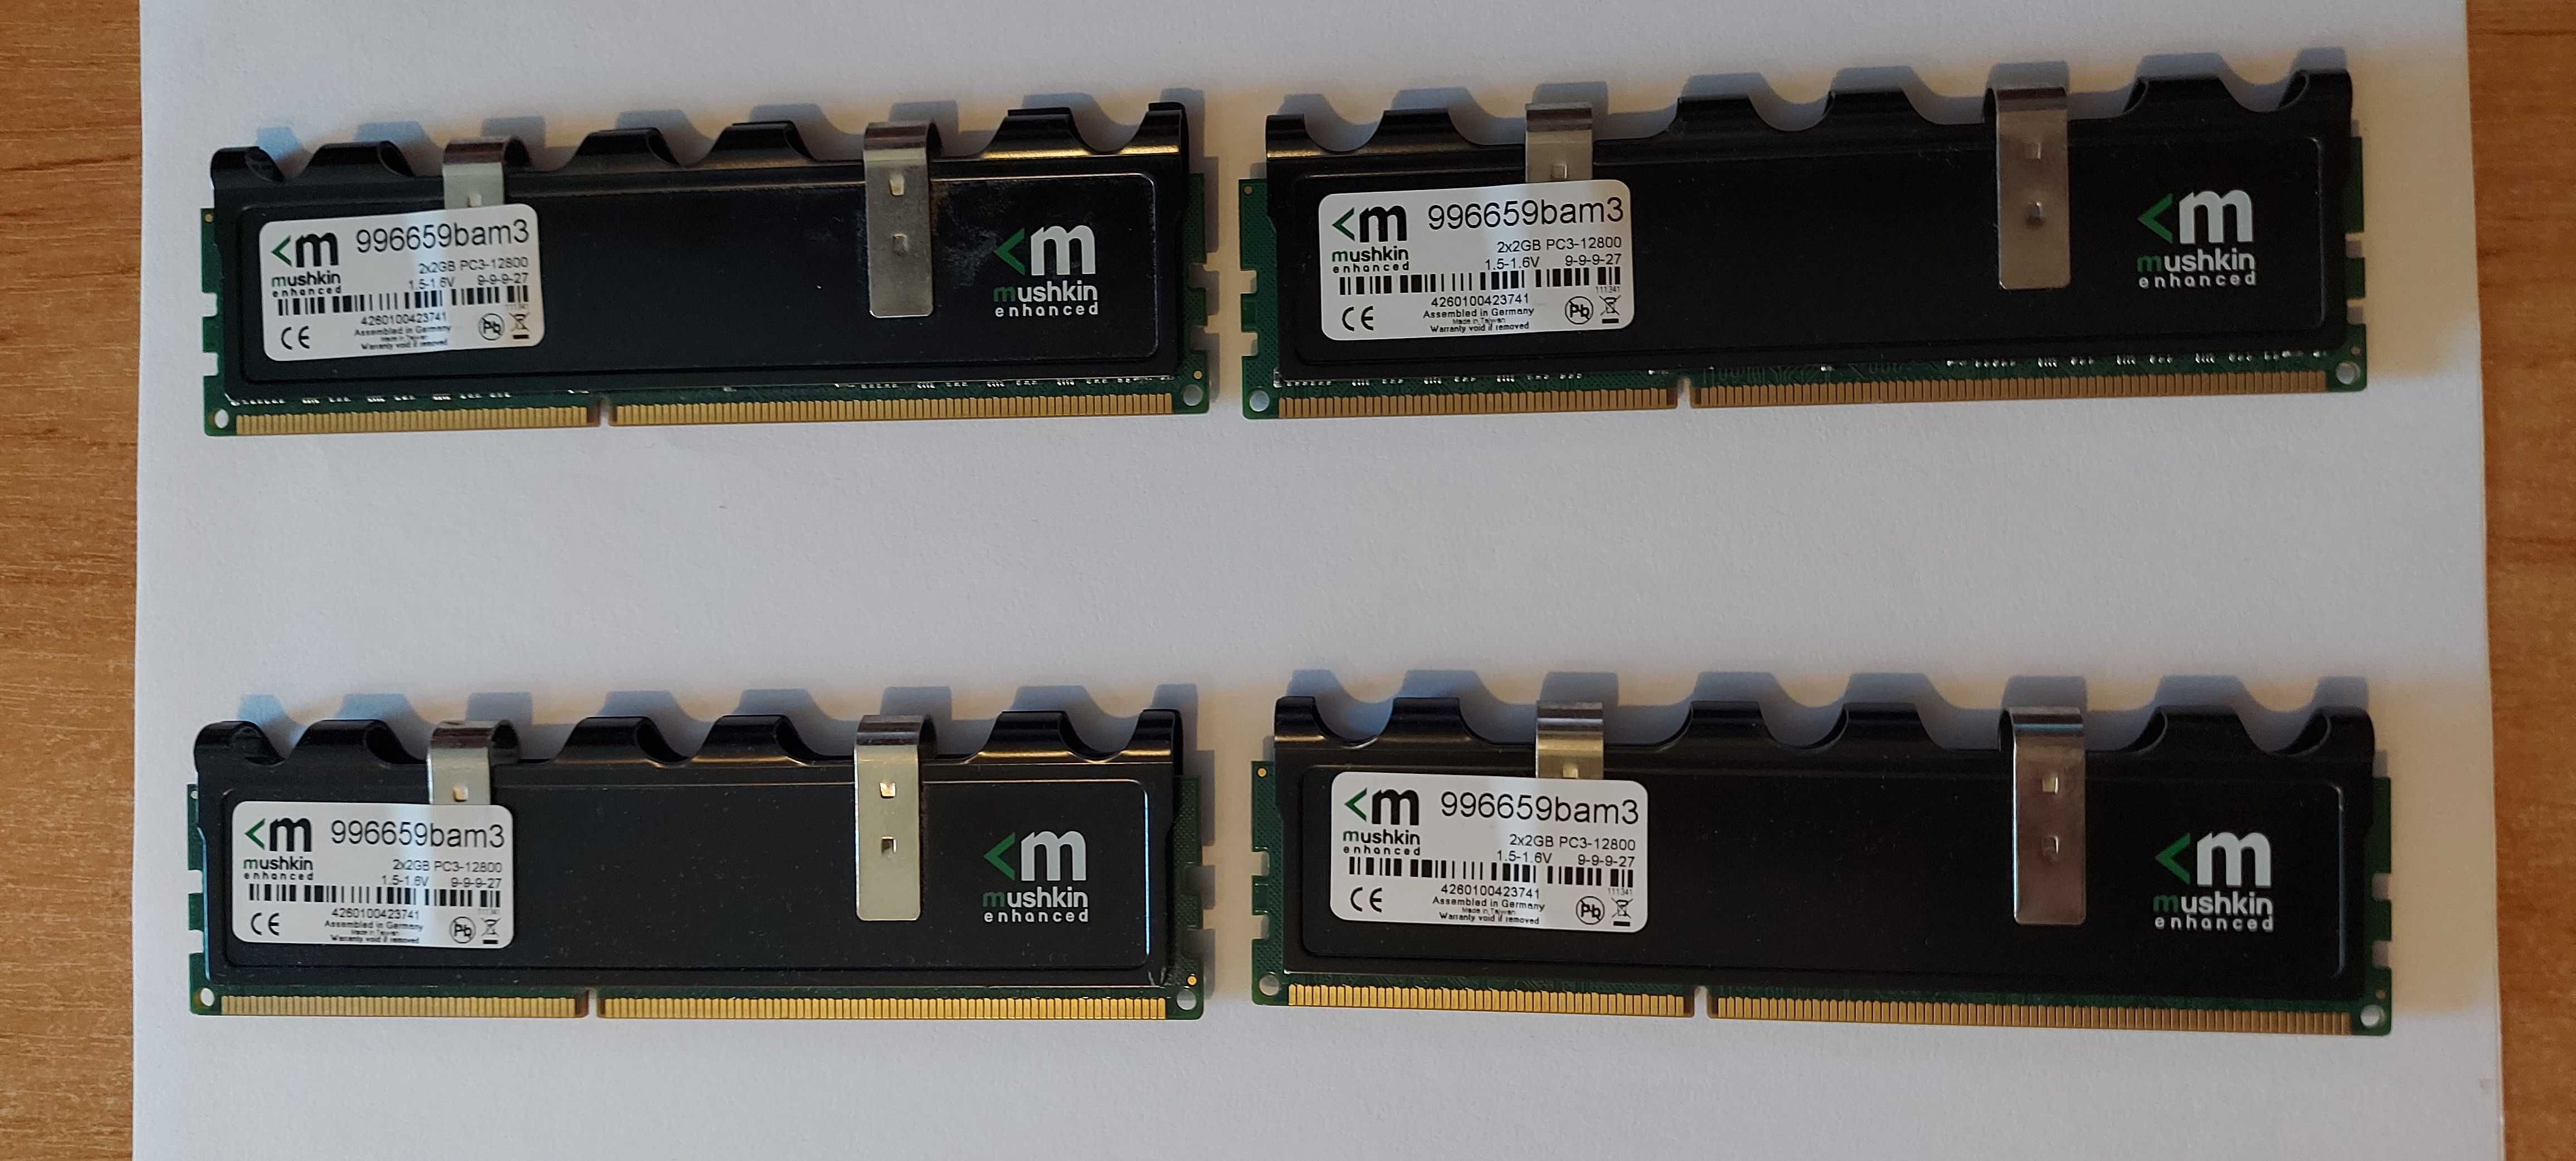 Оперативна пам'ять Mushkin Kit 8 Gb (4x2 Gb) DDR3-1333 9-9-9